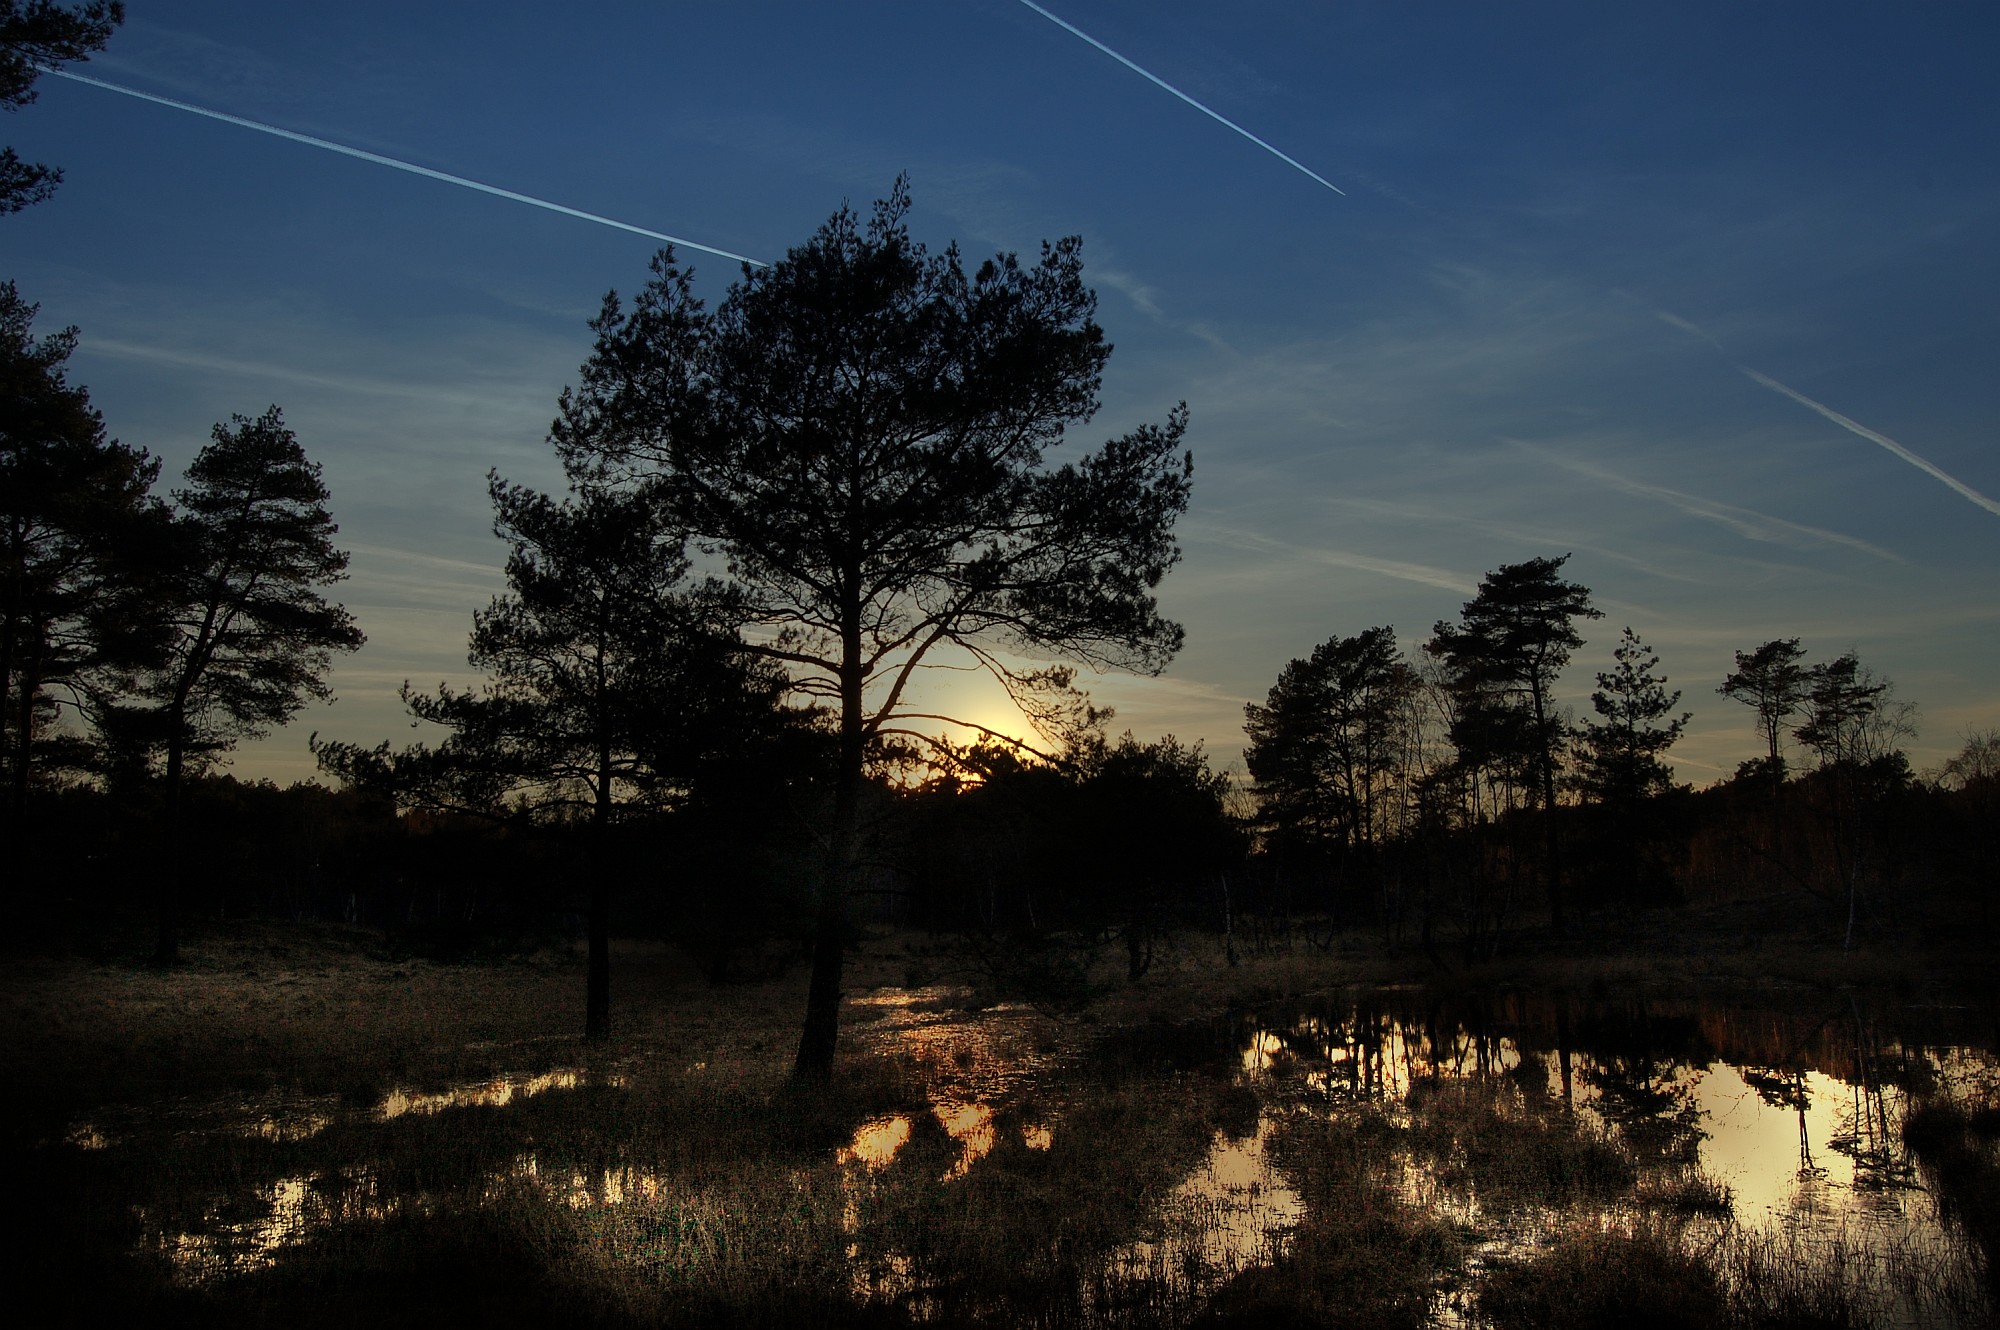 Des Mondes mildes Licht über einem Moor (c) A.Dreher/pixelio.de